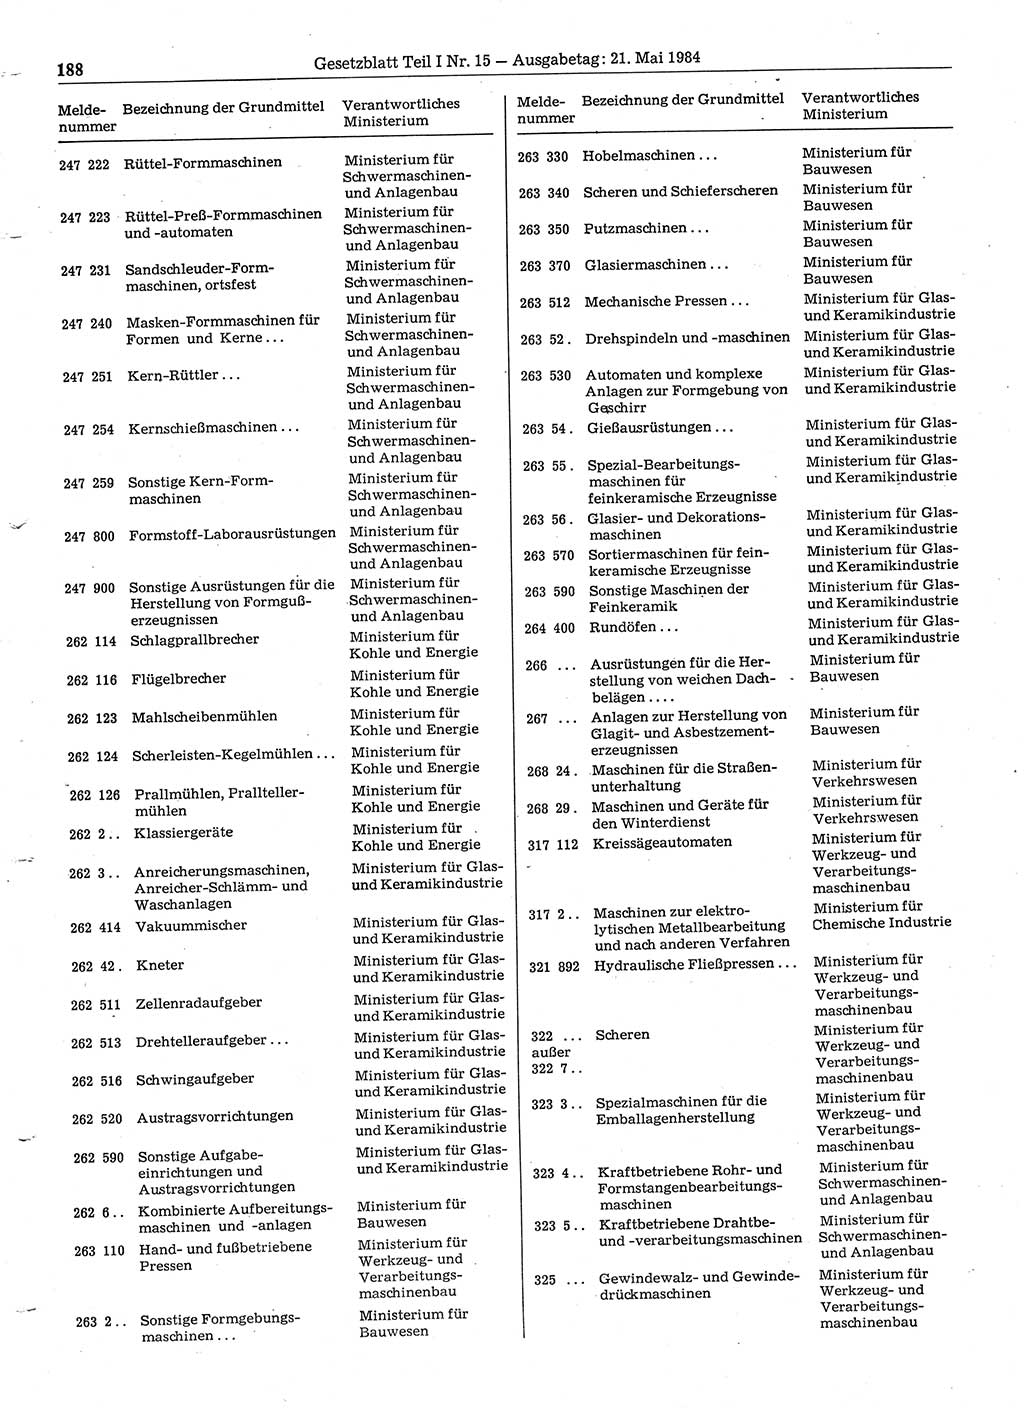 Gesetzblatt (GBl.) der Deutschen Demokratischen Republik (DDR) Teil Ⅰ 1984, Seite 188 (GBl. DDR Ⅰ 1984, S. 188)